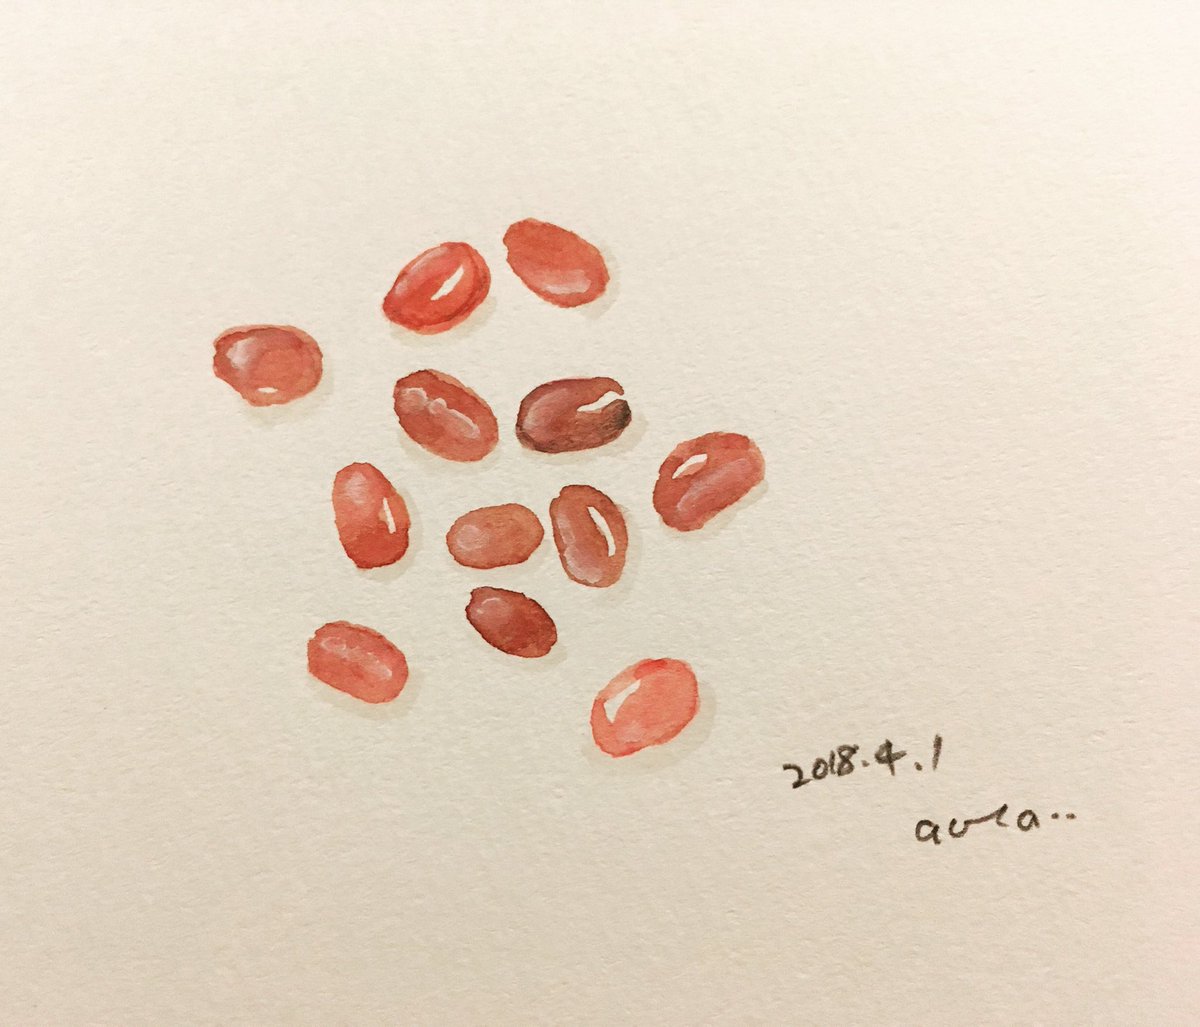 イイダaotaアヤカ 4 1 は エイプリルフールですが 毎月１日は あずきの日 らしいです イラストによる食卓 スケッチによる食卓 イラスト 水彩 水彩画 Illustration Drawing Japanesefood 今日は何の日 あずき 小豆 Red ４月はたくさん